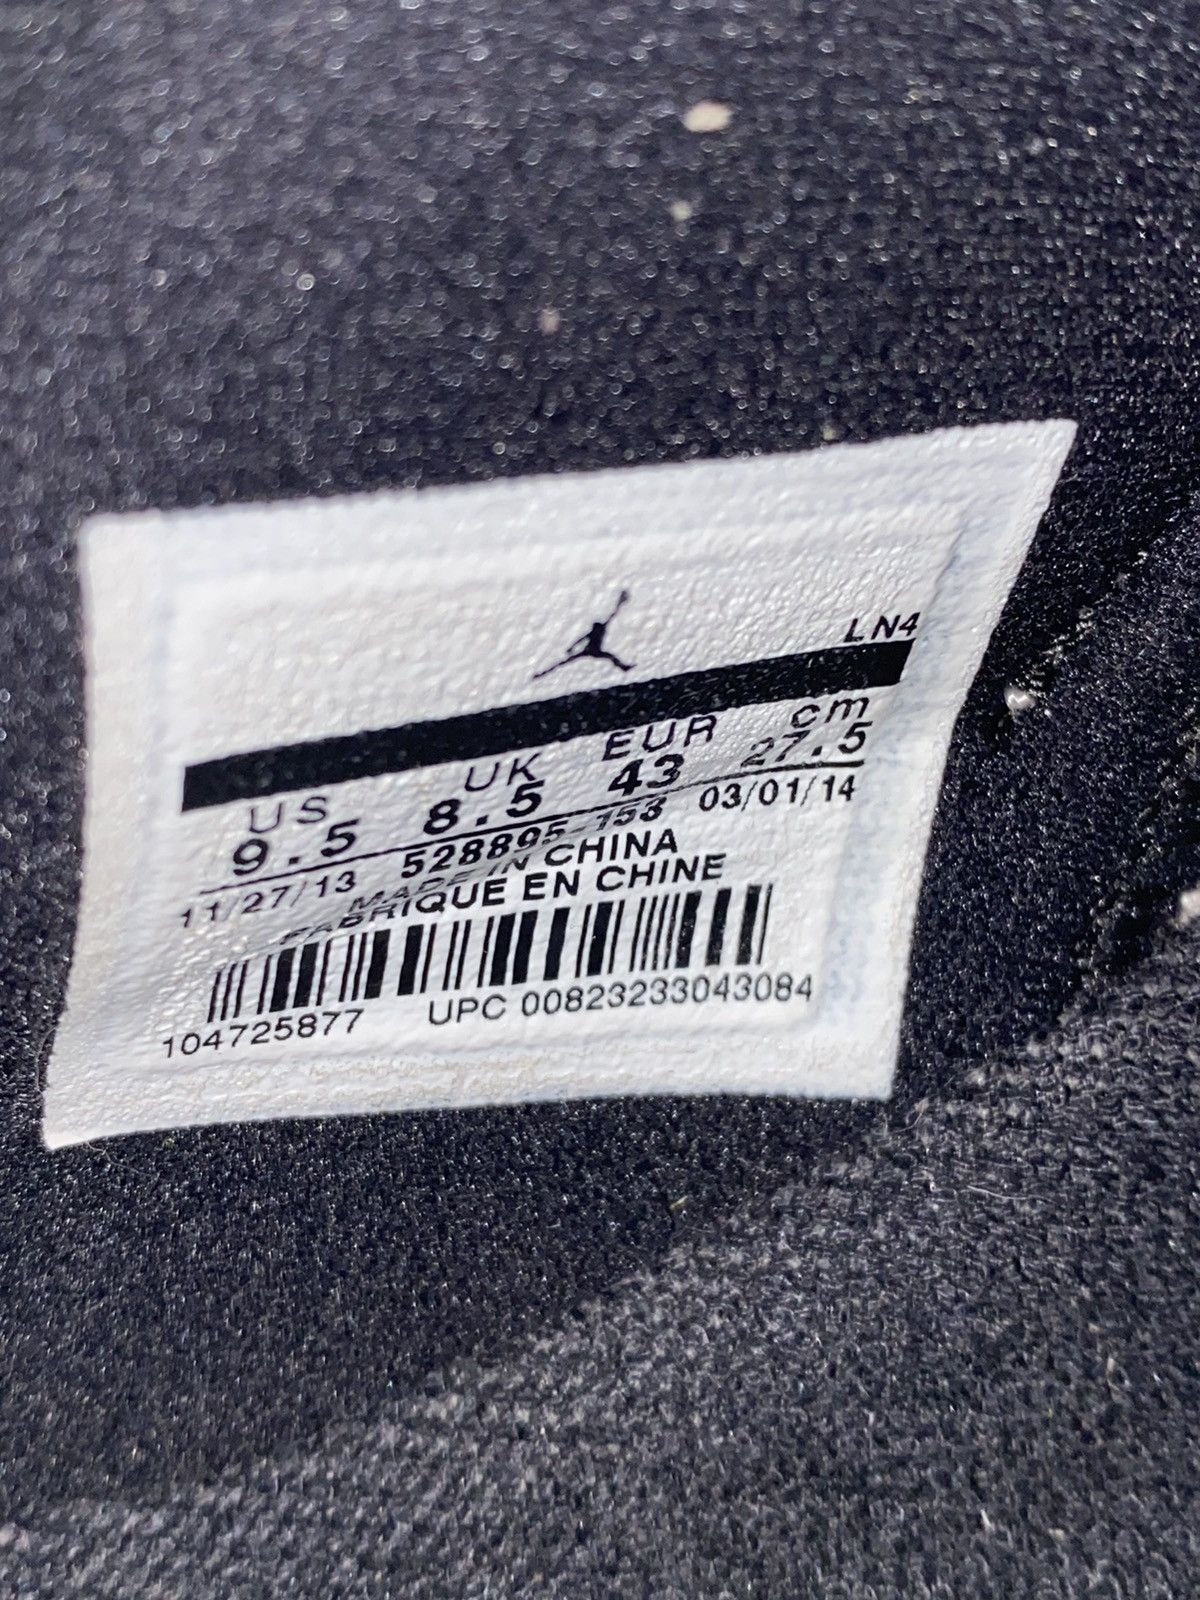 Nike Jordan 11 Concord low (2014) Size US 9.5 / EU 42-43 - 6 Thumbnail